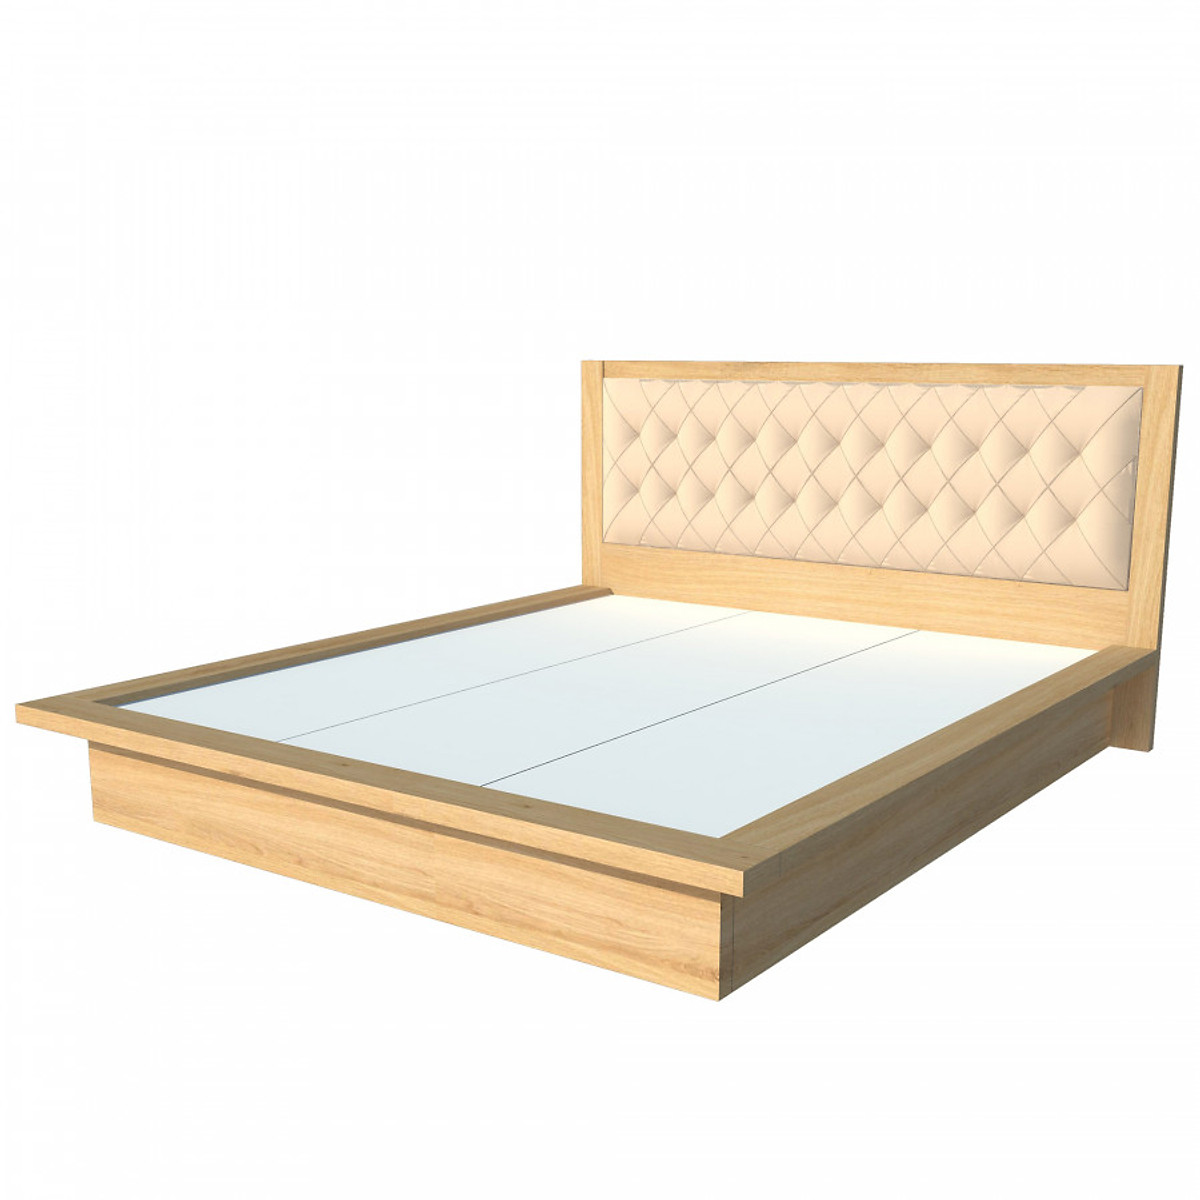 Giường ngủ cao cấp Tundo màu vàng sồi 140cm x 200cm